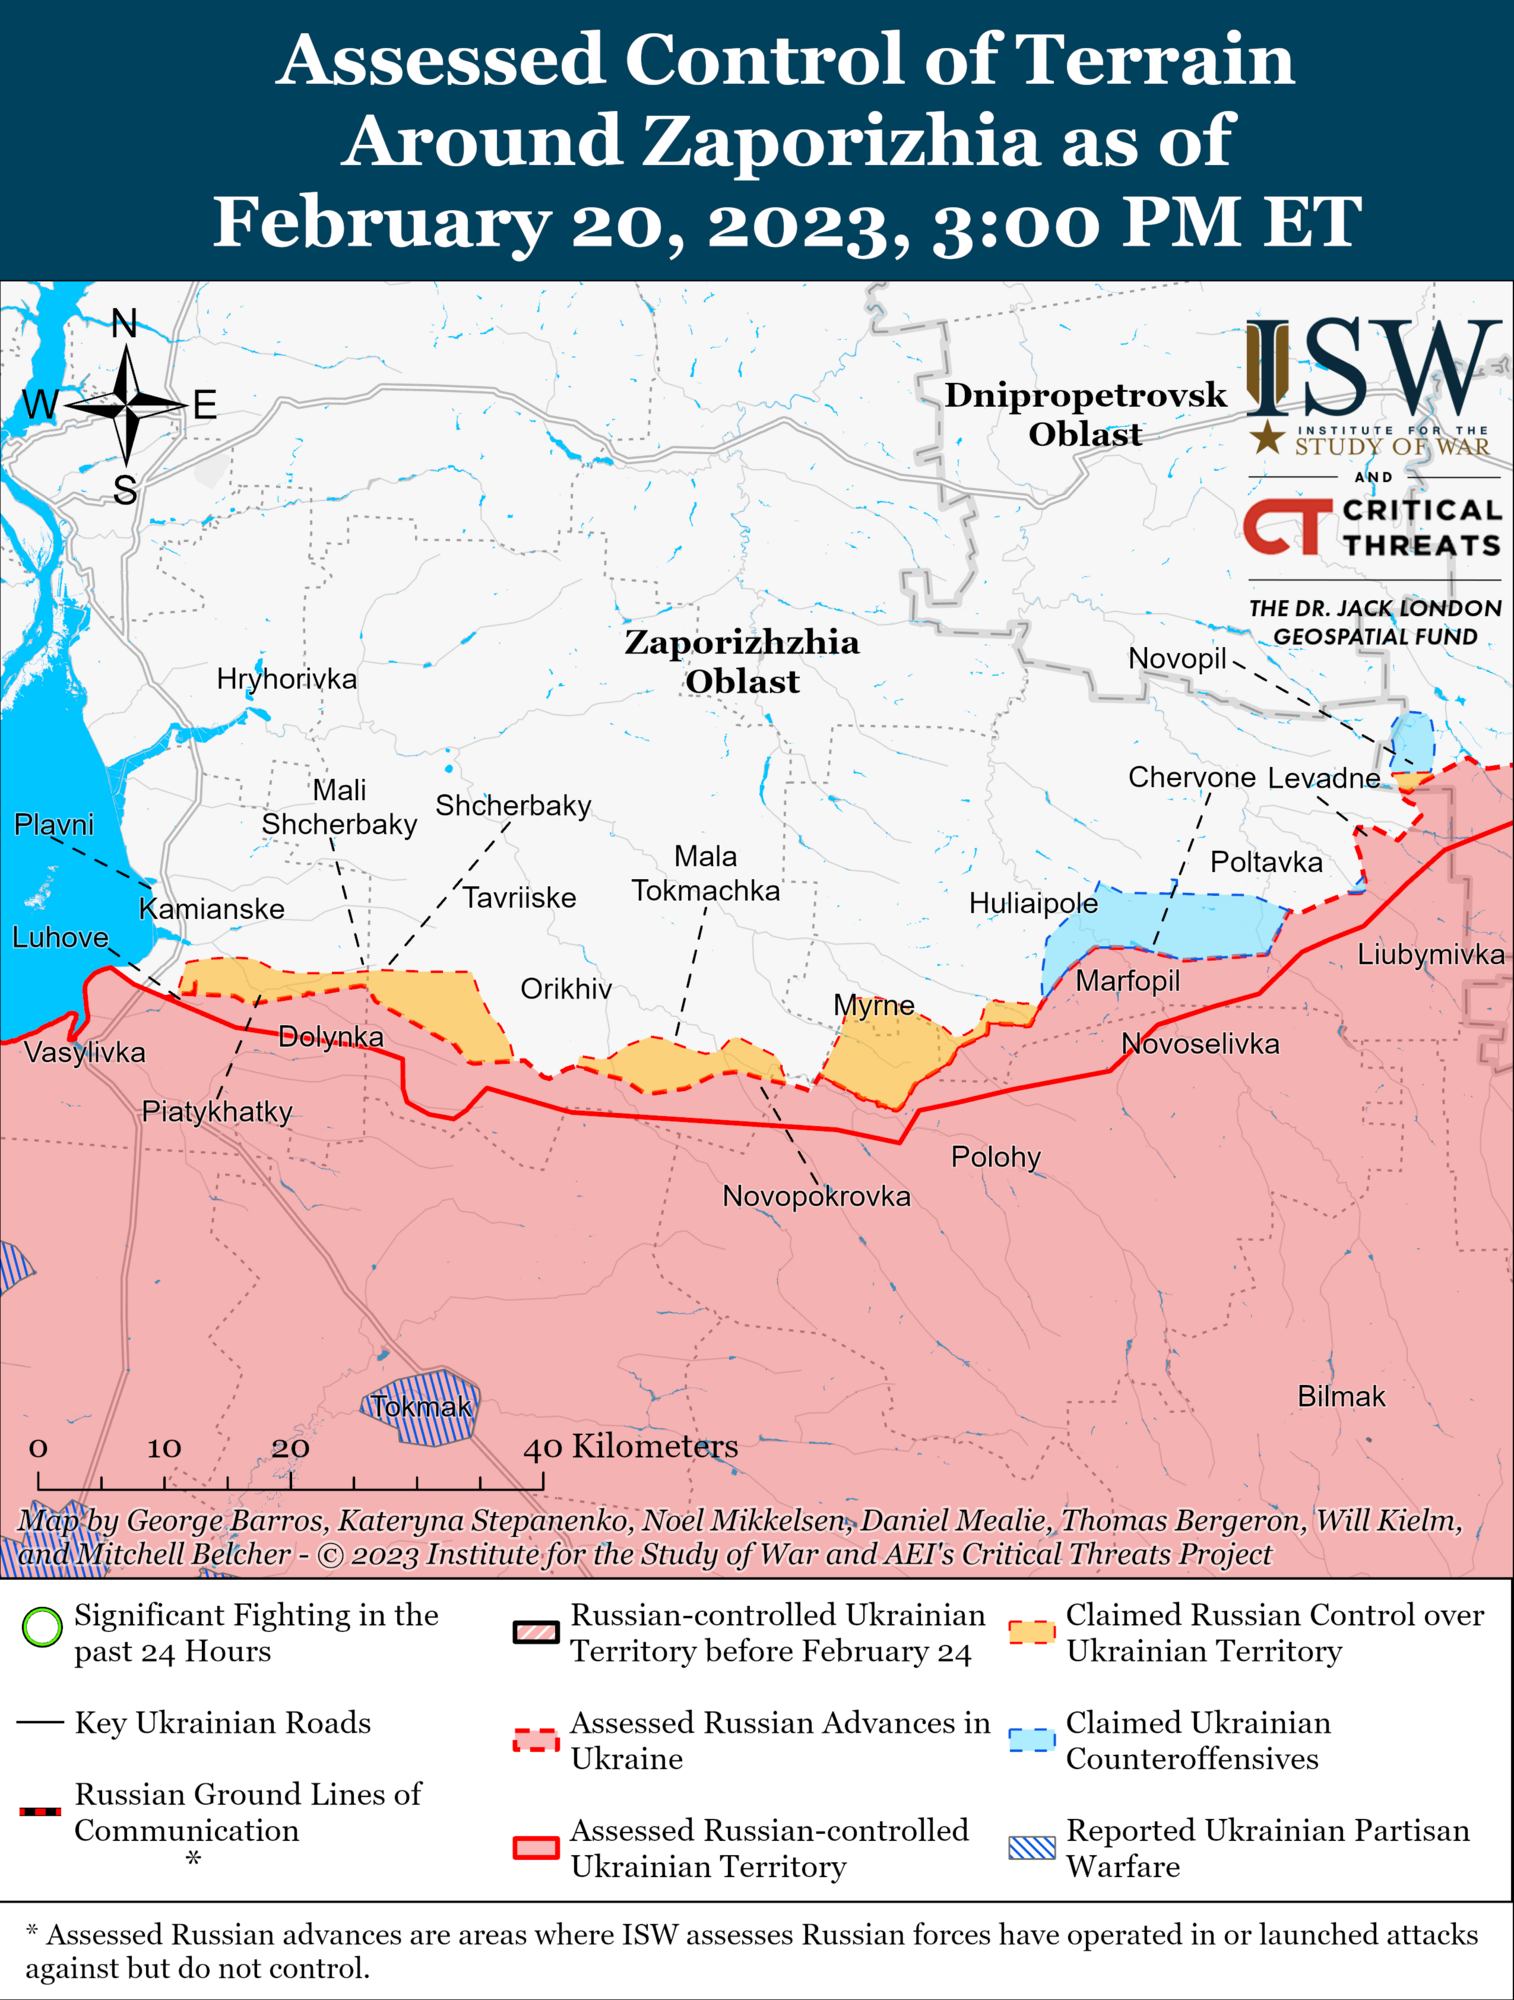 России не хватает сил на фронте, Украина может захватить инициативу: в ISW дали прогноз о ходе войны в 2023 году